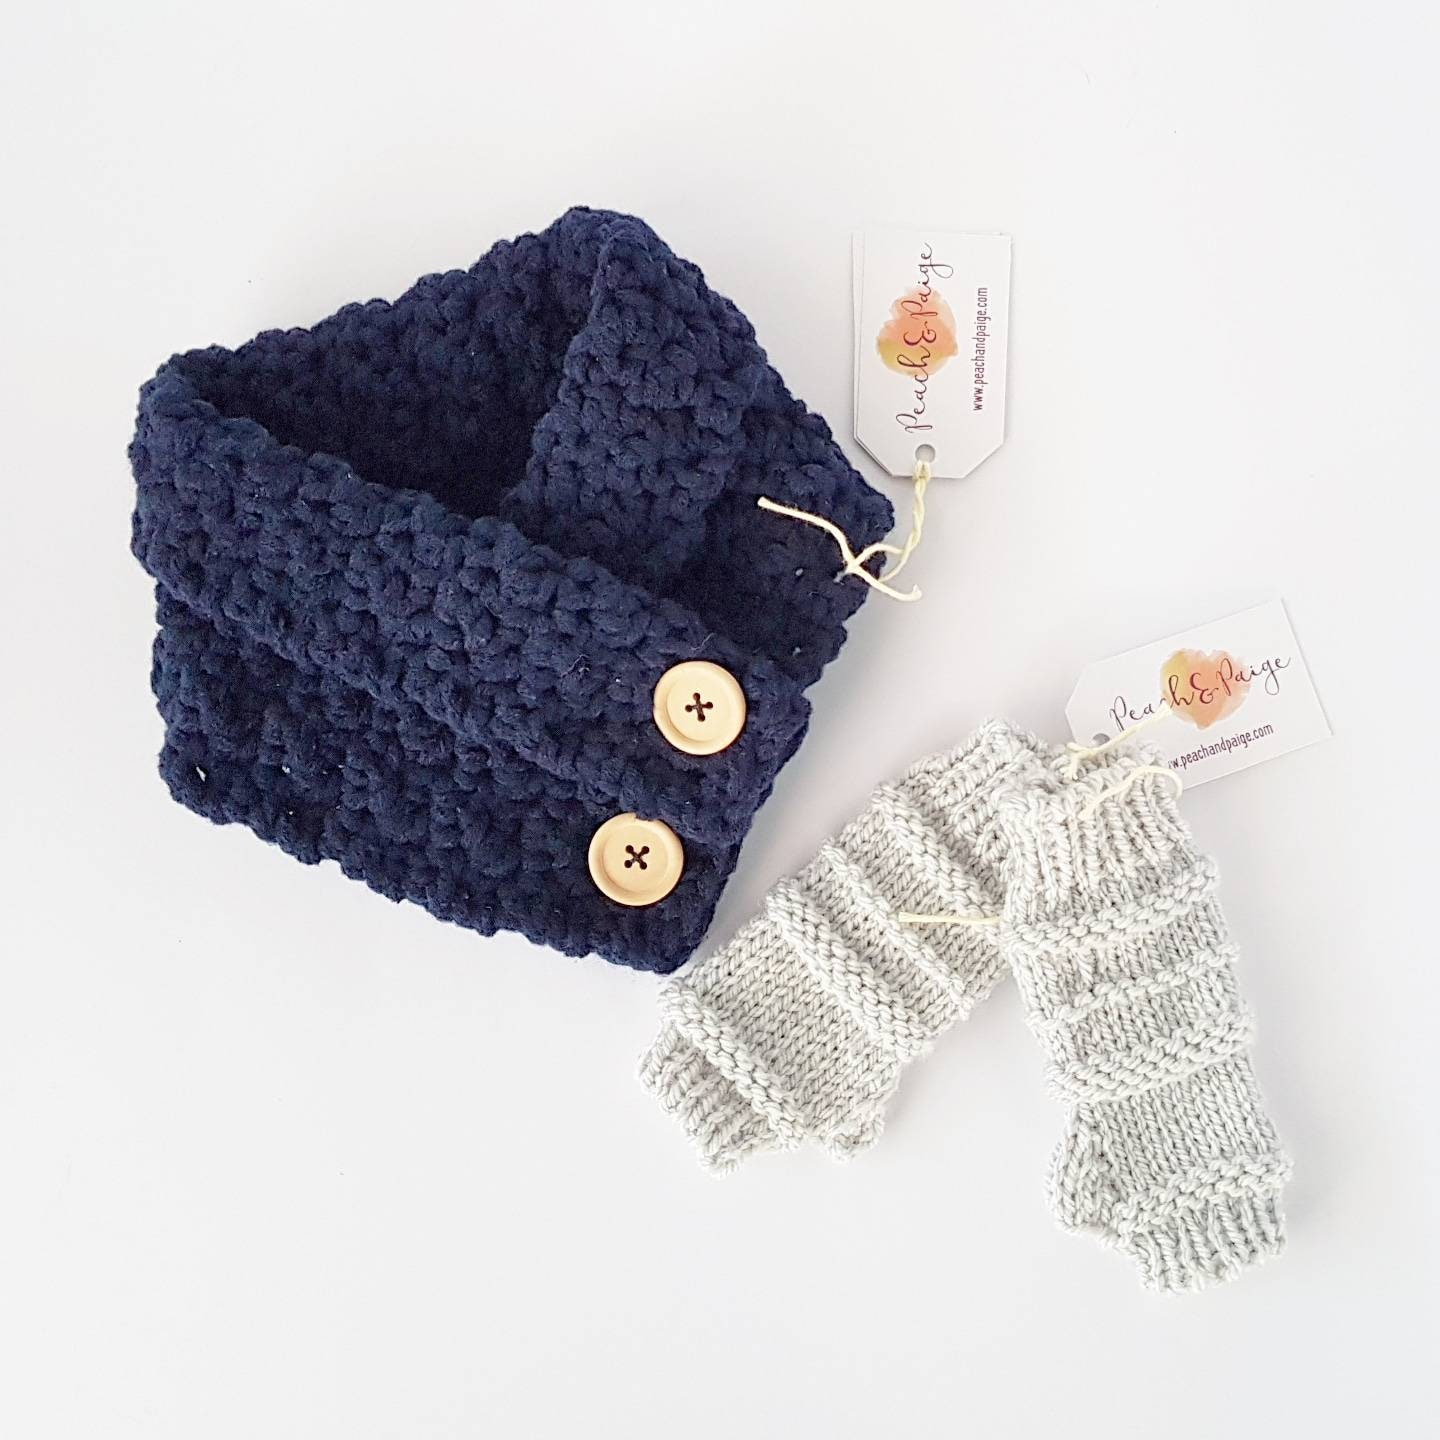 PATTERN ONLY Toddler to Adult Crochet Dakota Cowl crochet | Etsy